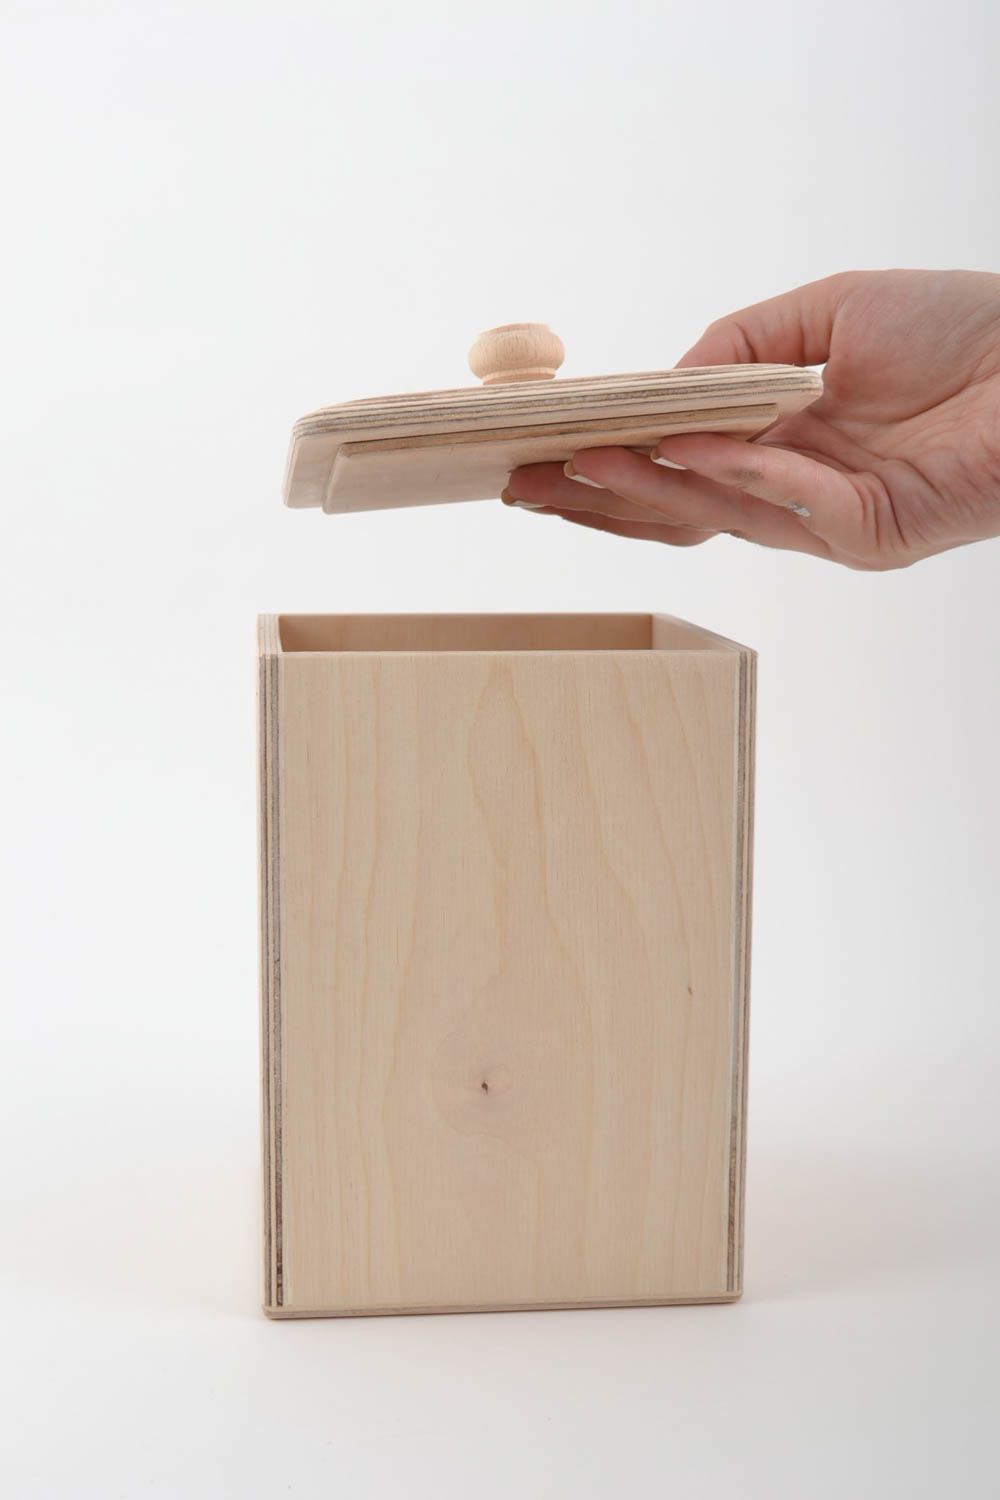 Holz Box für lose Produkte Rohling zum Bemalen handgemacht aus Sperrholz  foto 3